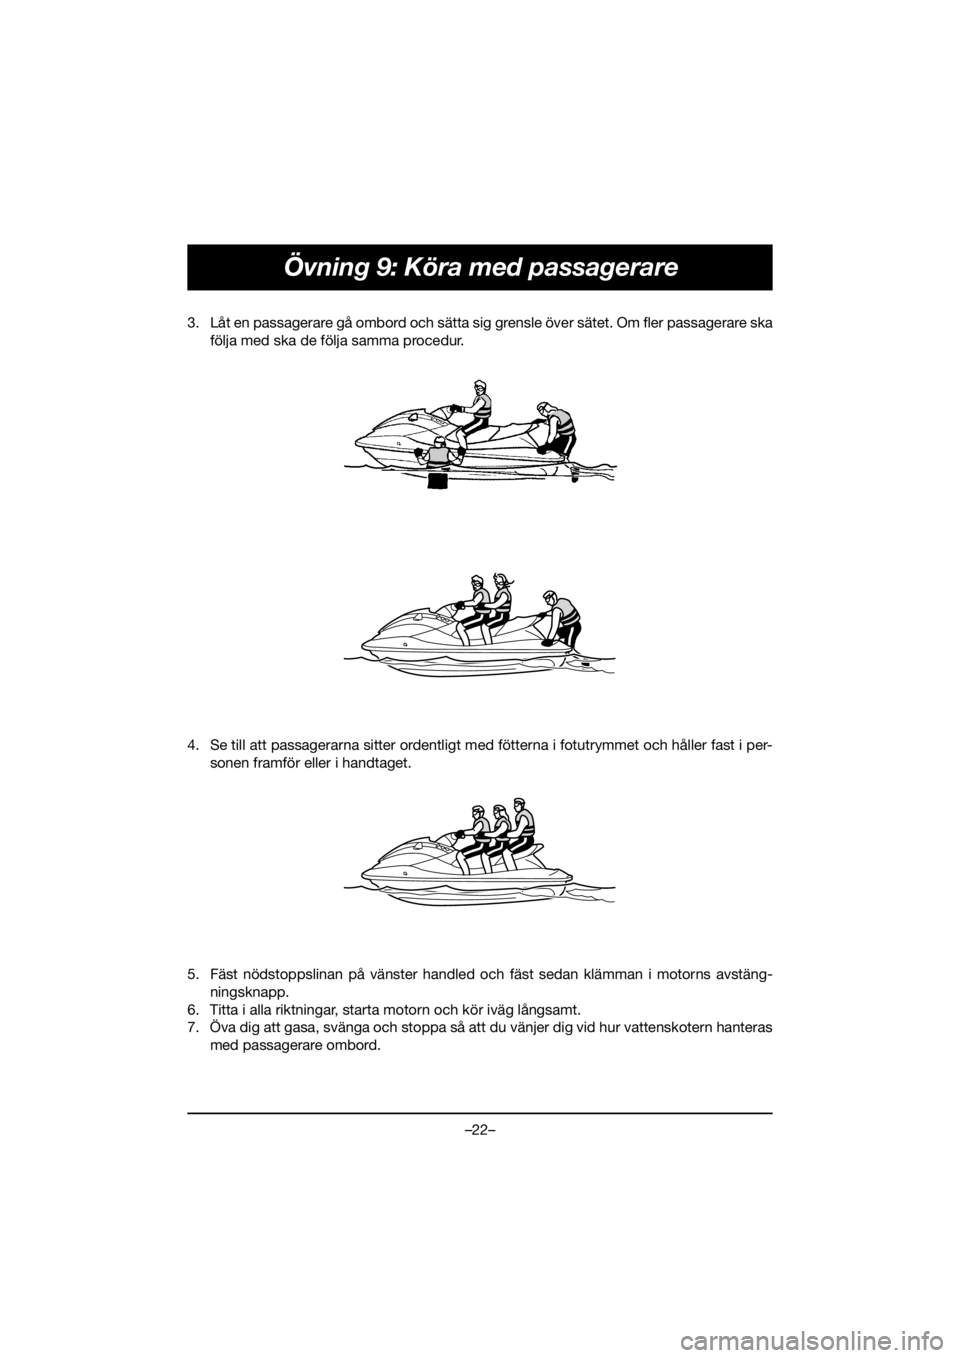 YAMAHA VX CRUISER HO 2020  Bruksanvisningar (in Swedish) –22–
Övning 9: Köra med passagerare
3. Låt en passagerare gå ombord och sätta sig grensle över sätet. Om fler passagerare ska
följa med ska de följa samma procedur. 
4. Se till att passag